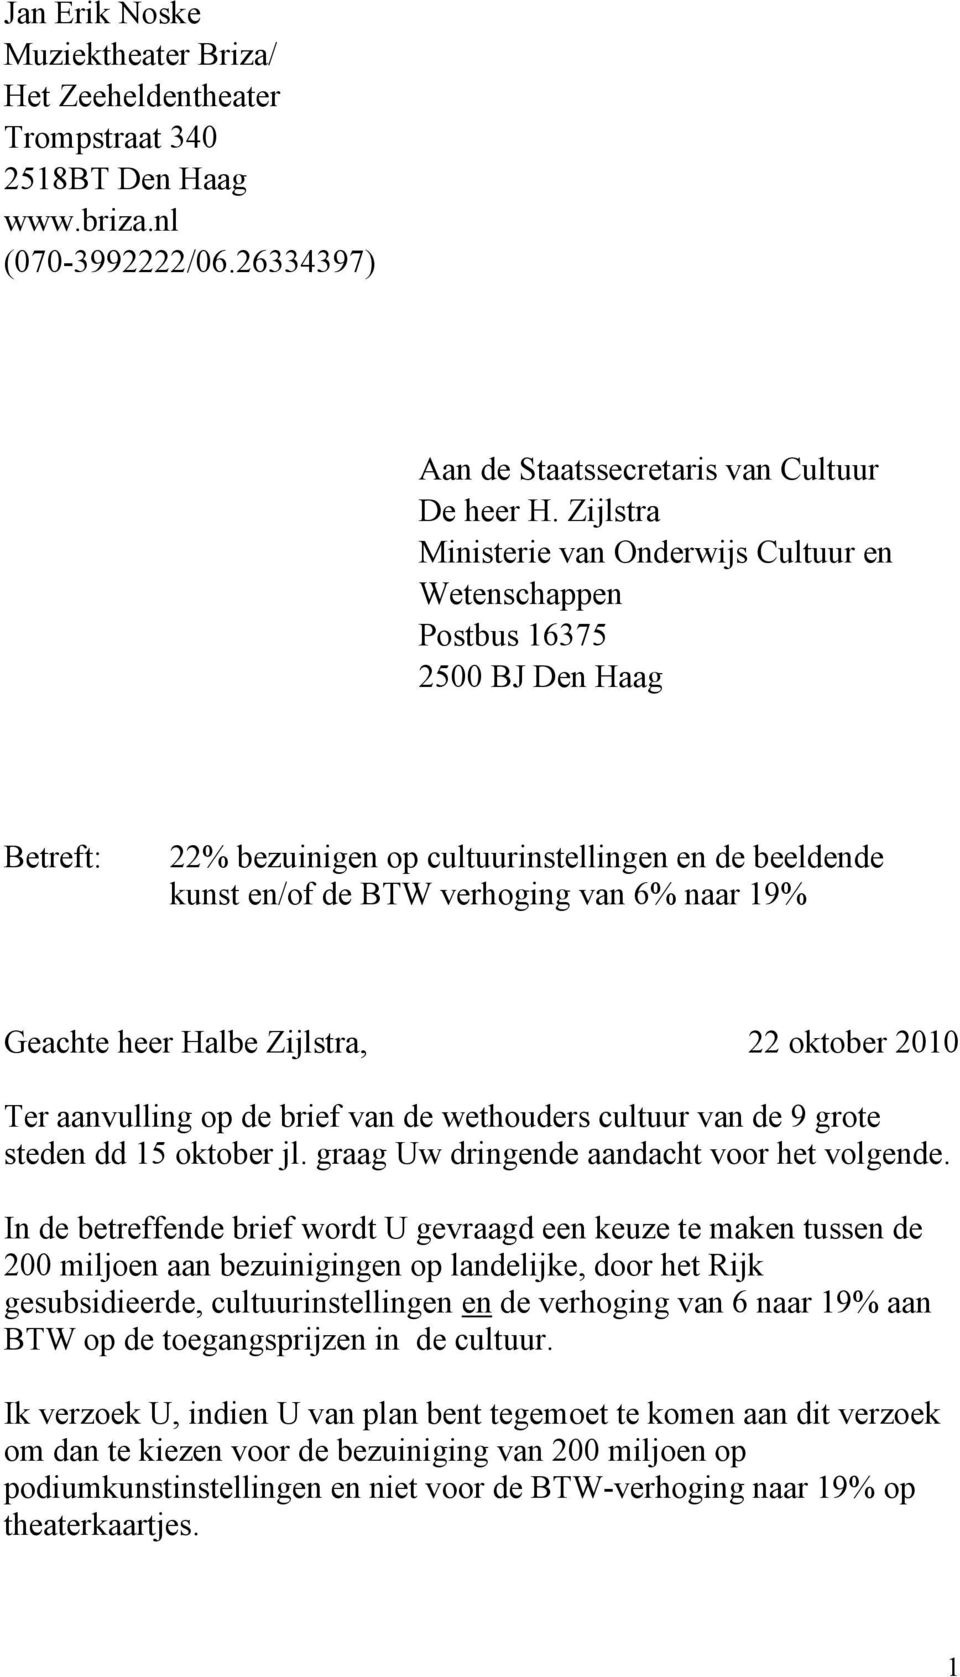 Geachte heer Halbe Zijlstra, 22 oktober 2010 Ter aanvulling op de brief van de wethouders cultuur van de 9 grote steden dd 15 oktober jl. graag Uw dringende aandacht voor het volgende.